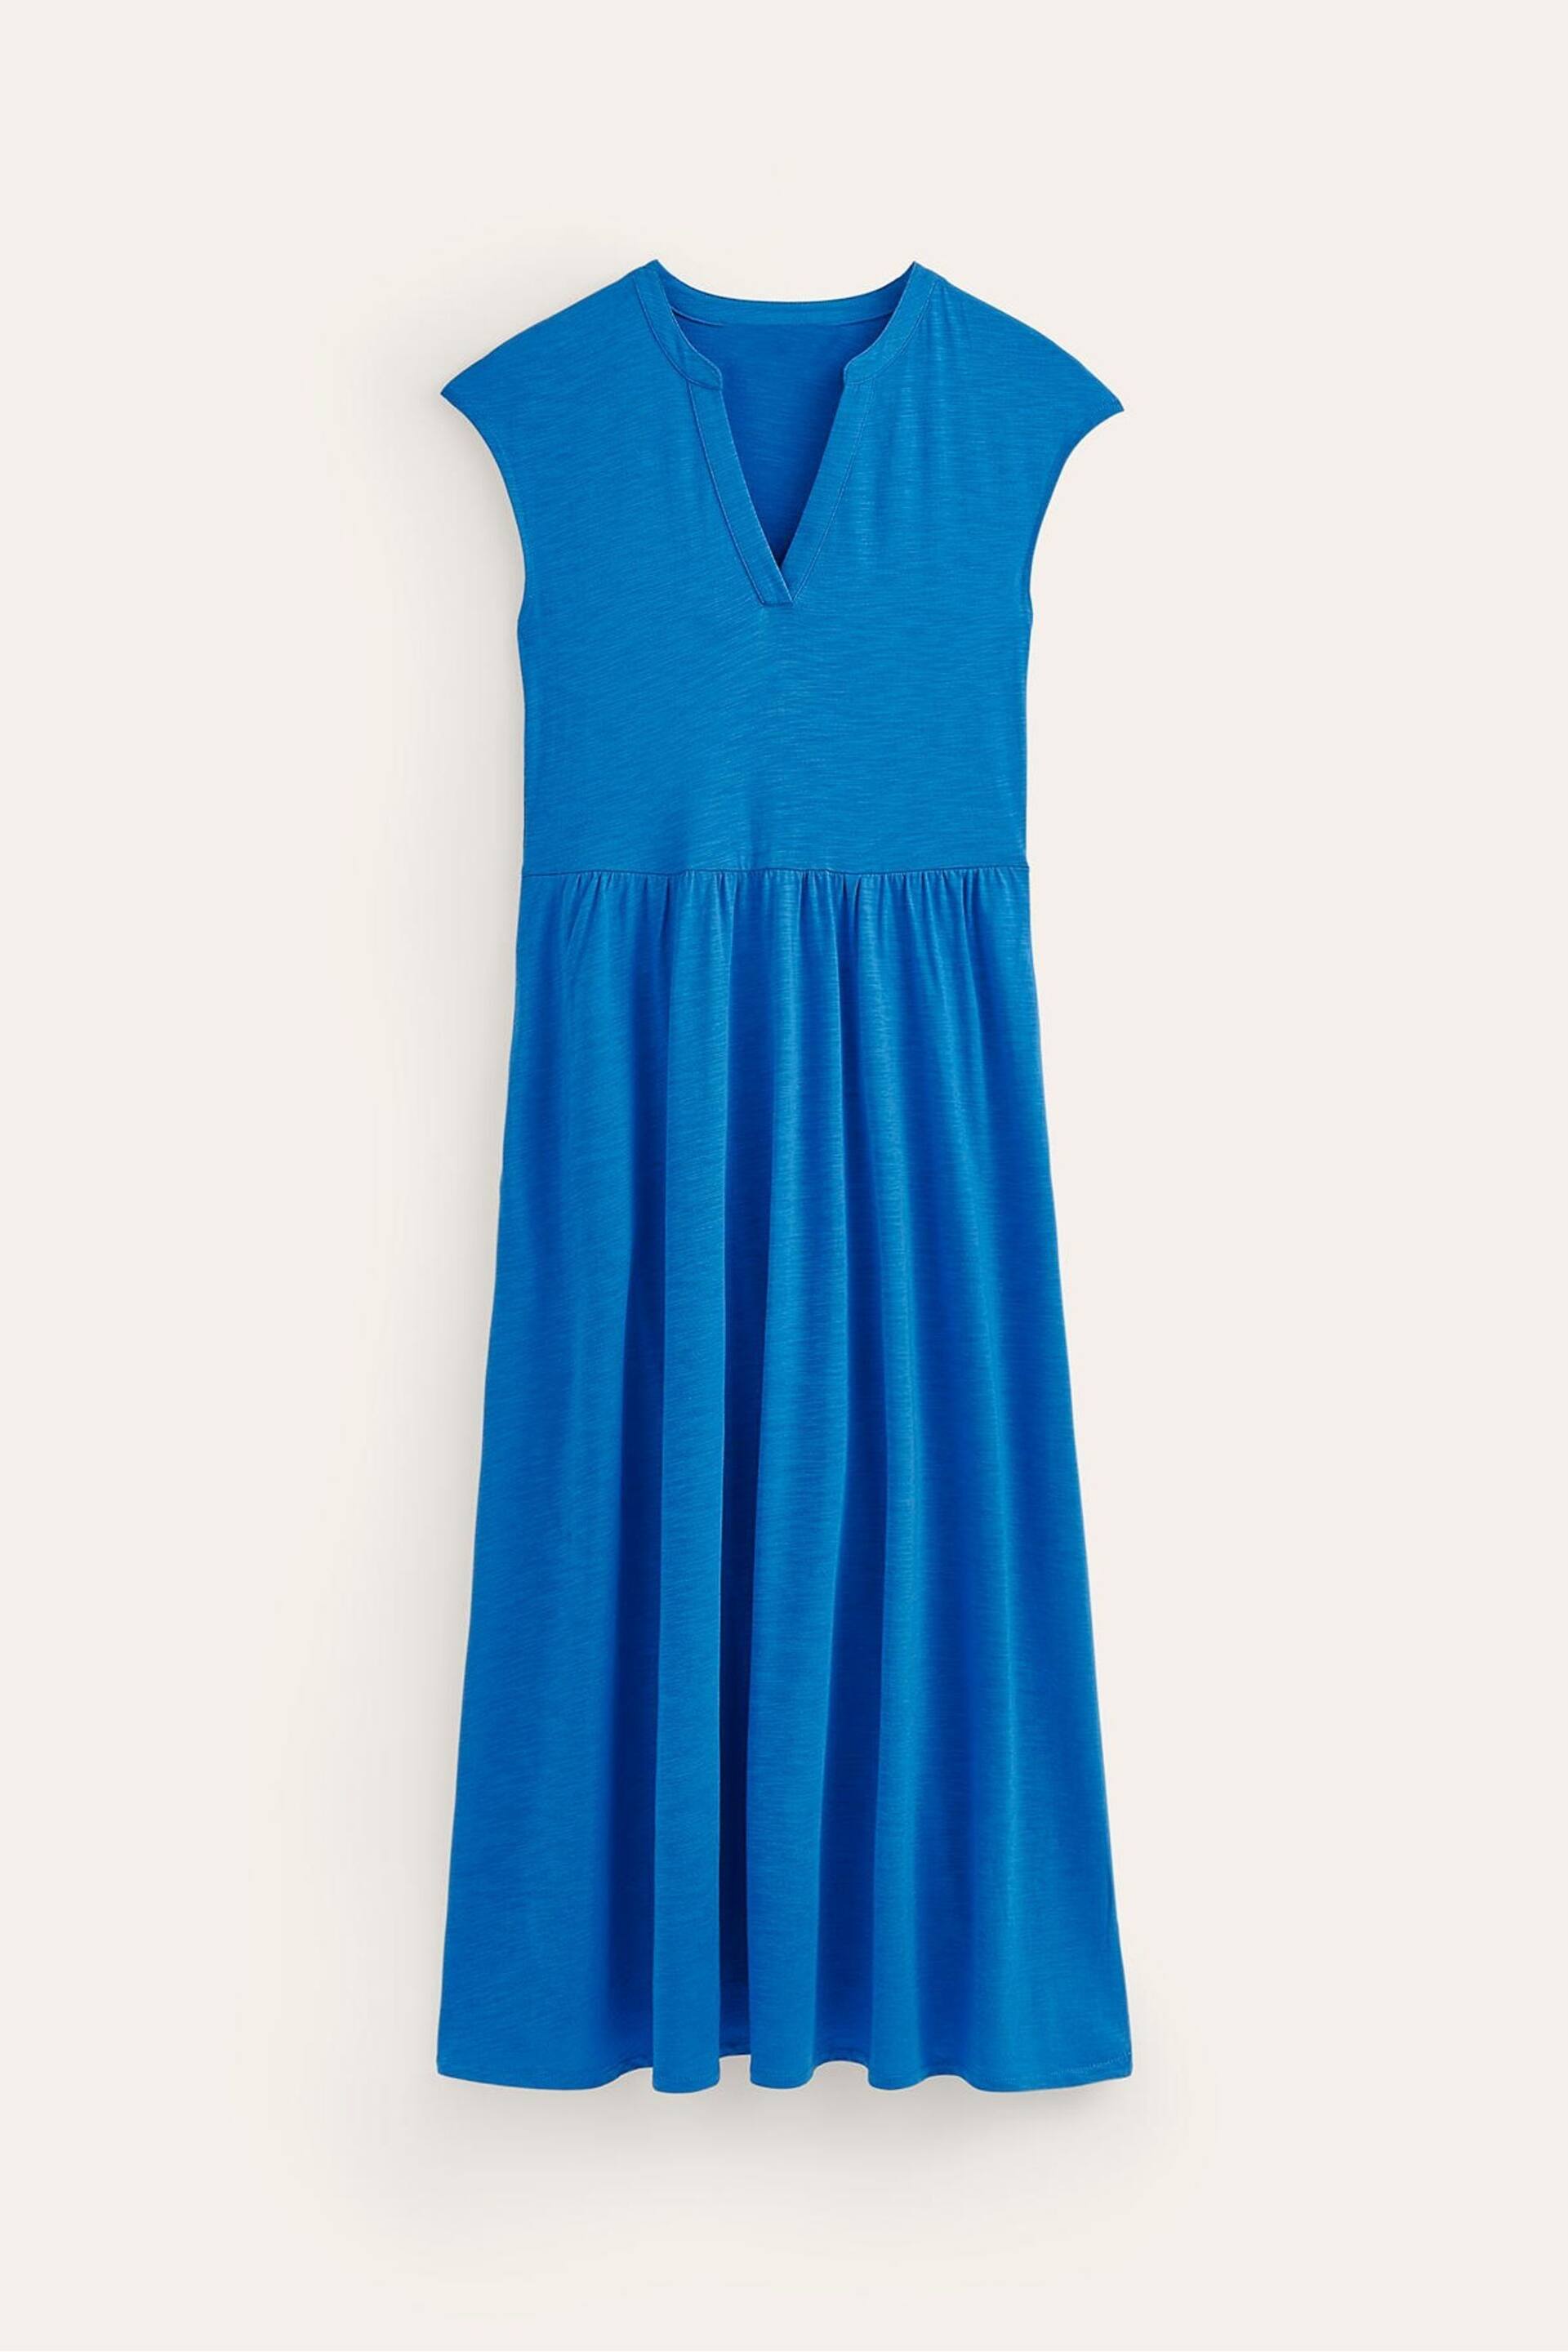 Boden Blue Chloe Notch Jersey Midi Dress - Image 6 of 6